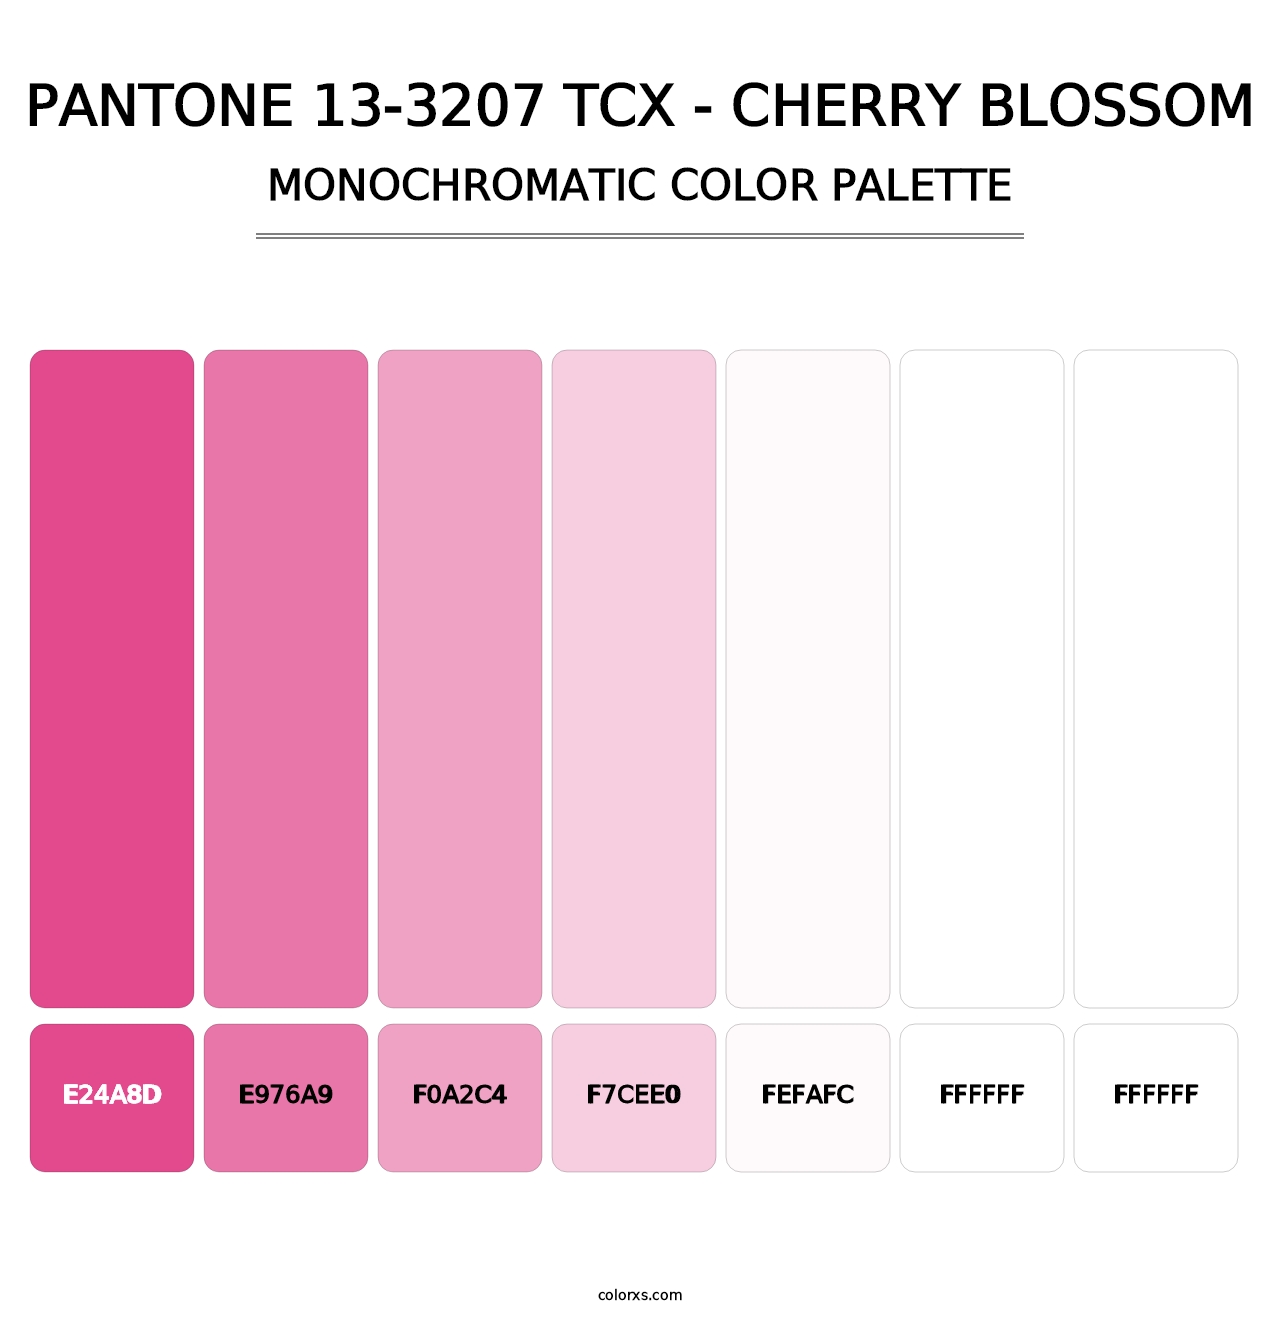 PANTONE 13-3207 TCX - Cherry Blossom - Monochromatic Color Palette